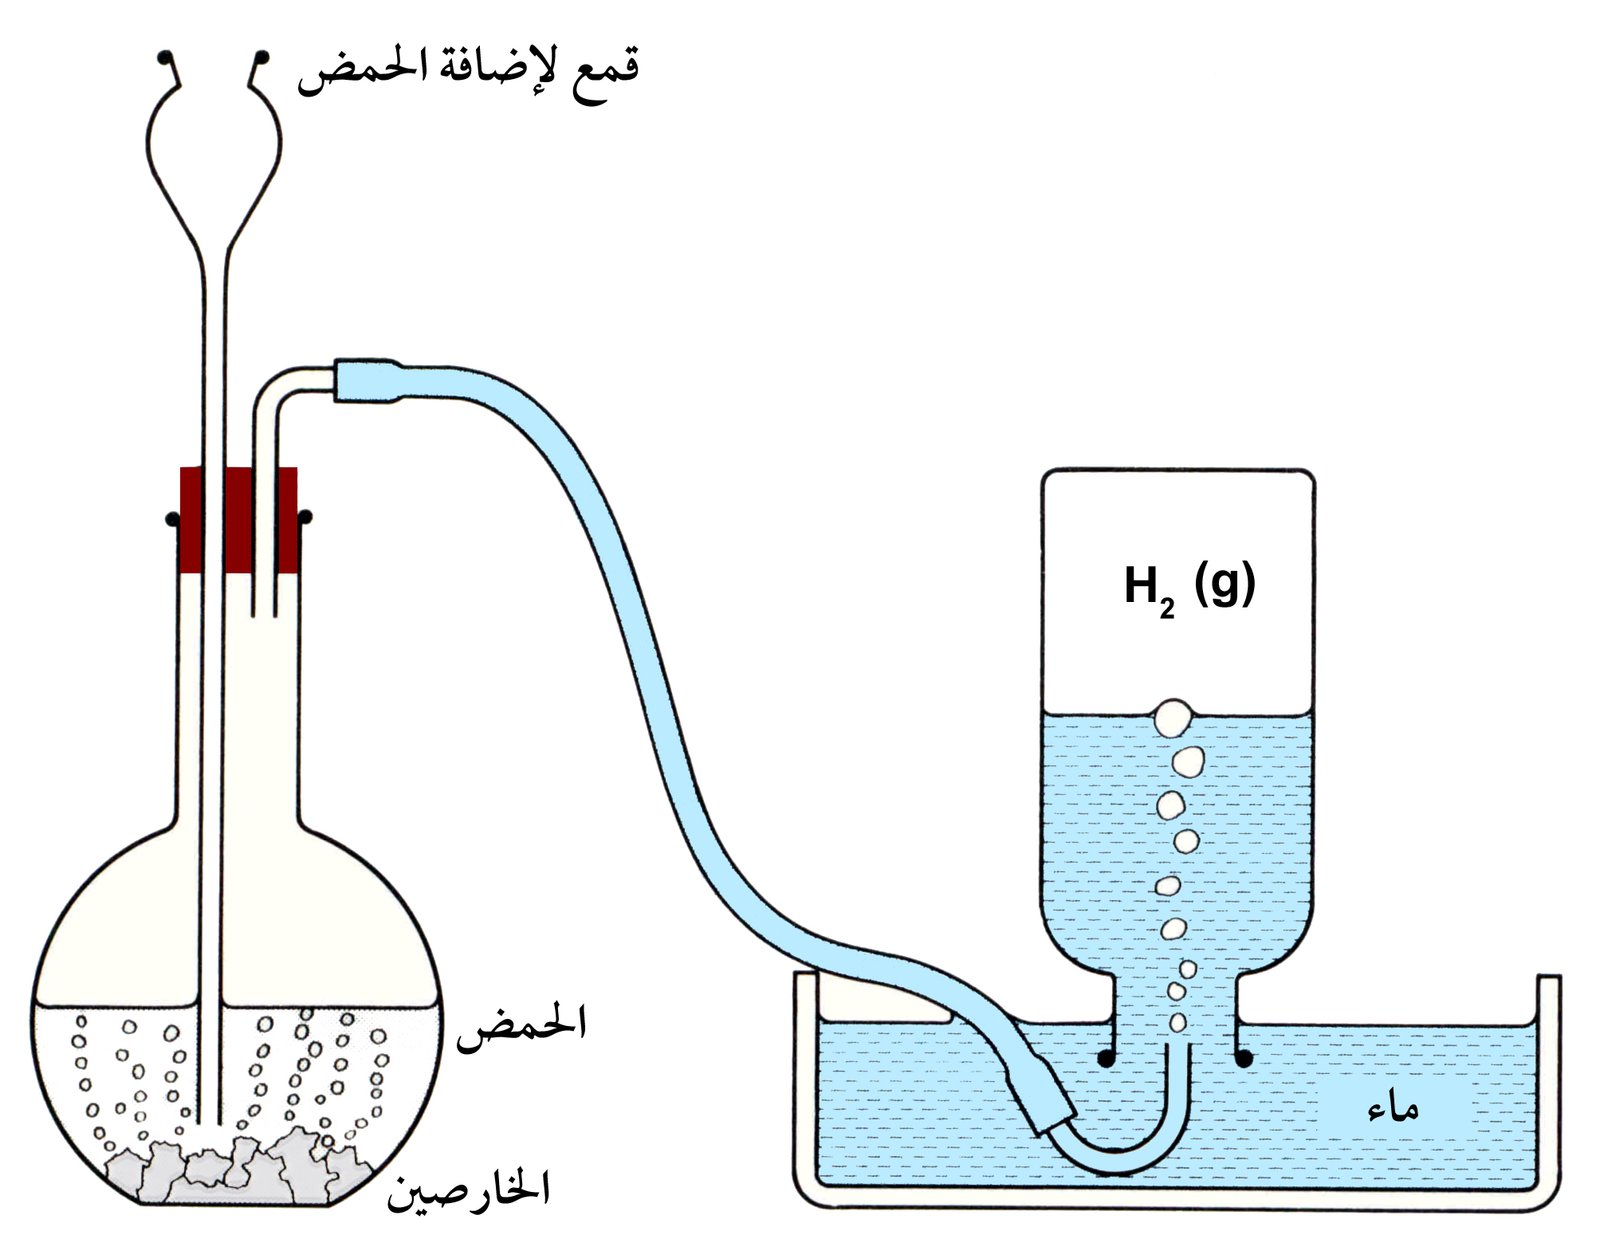 الهيدروجين - خصائص و معلومات عن غاز الهيدروجين Hydrogen